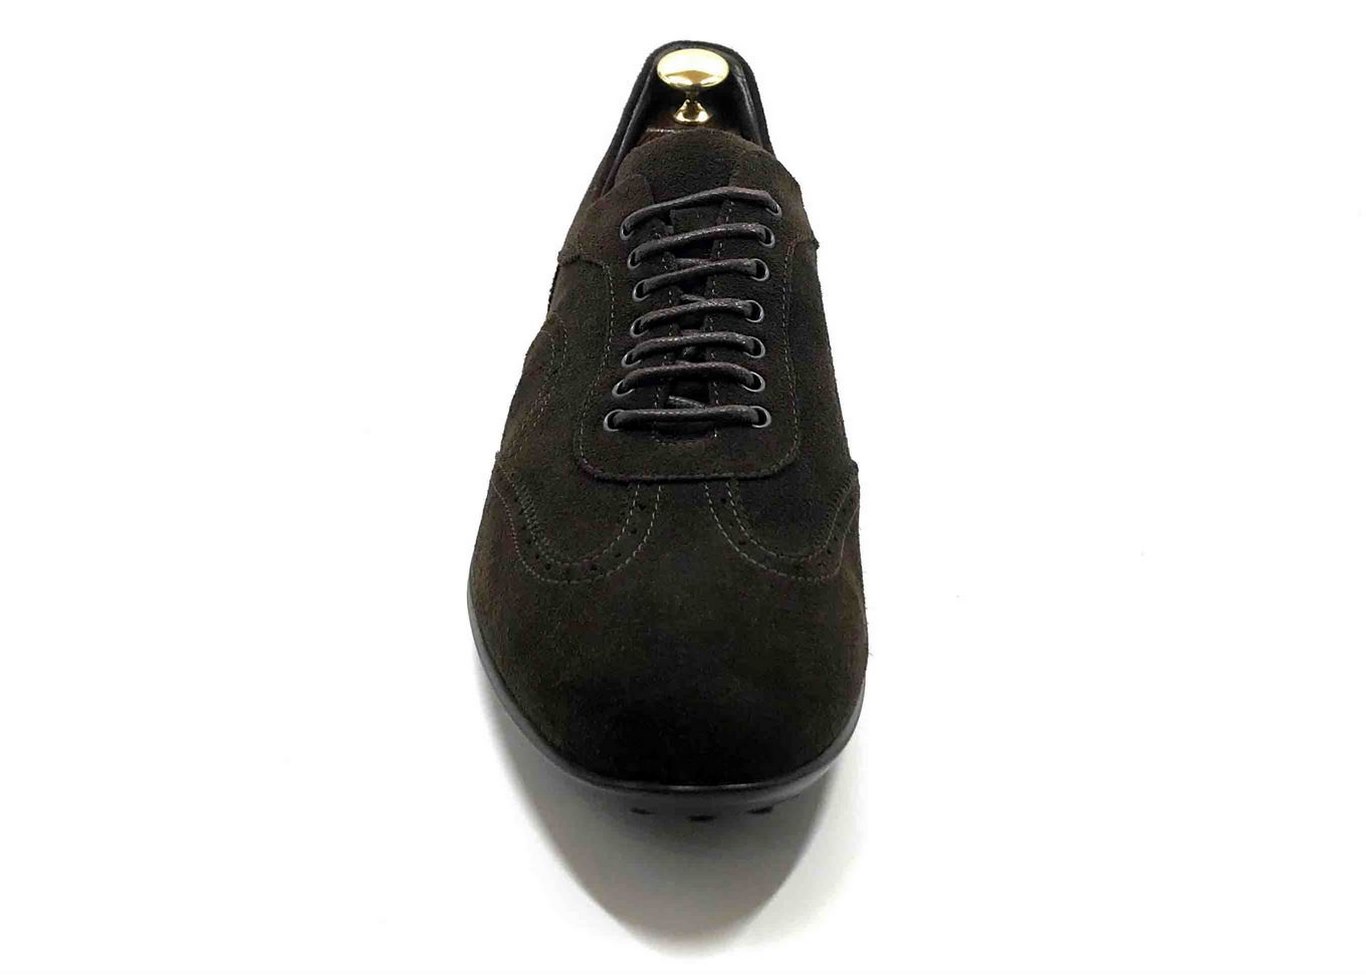 Sneaker in camoscio Marrone scuro con soletta estraibile